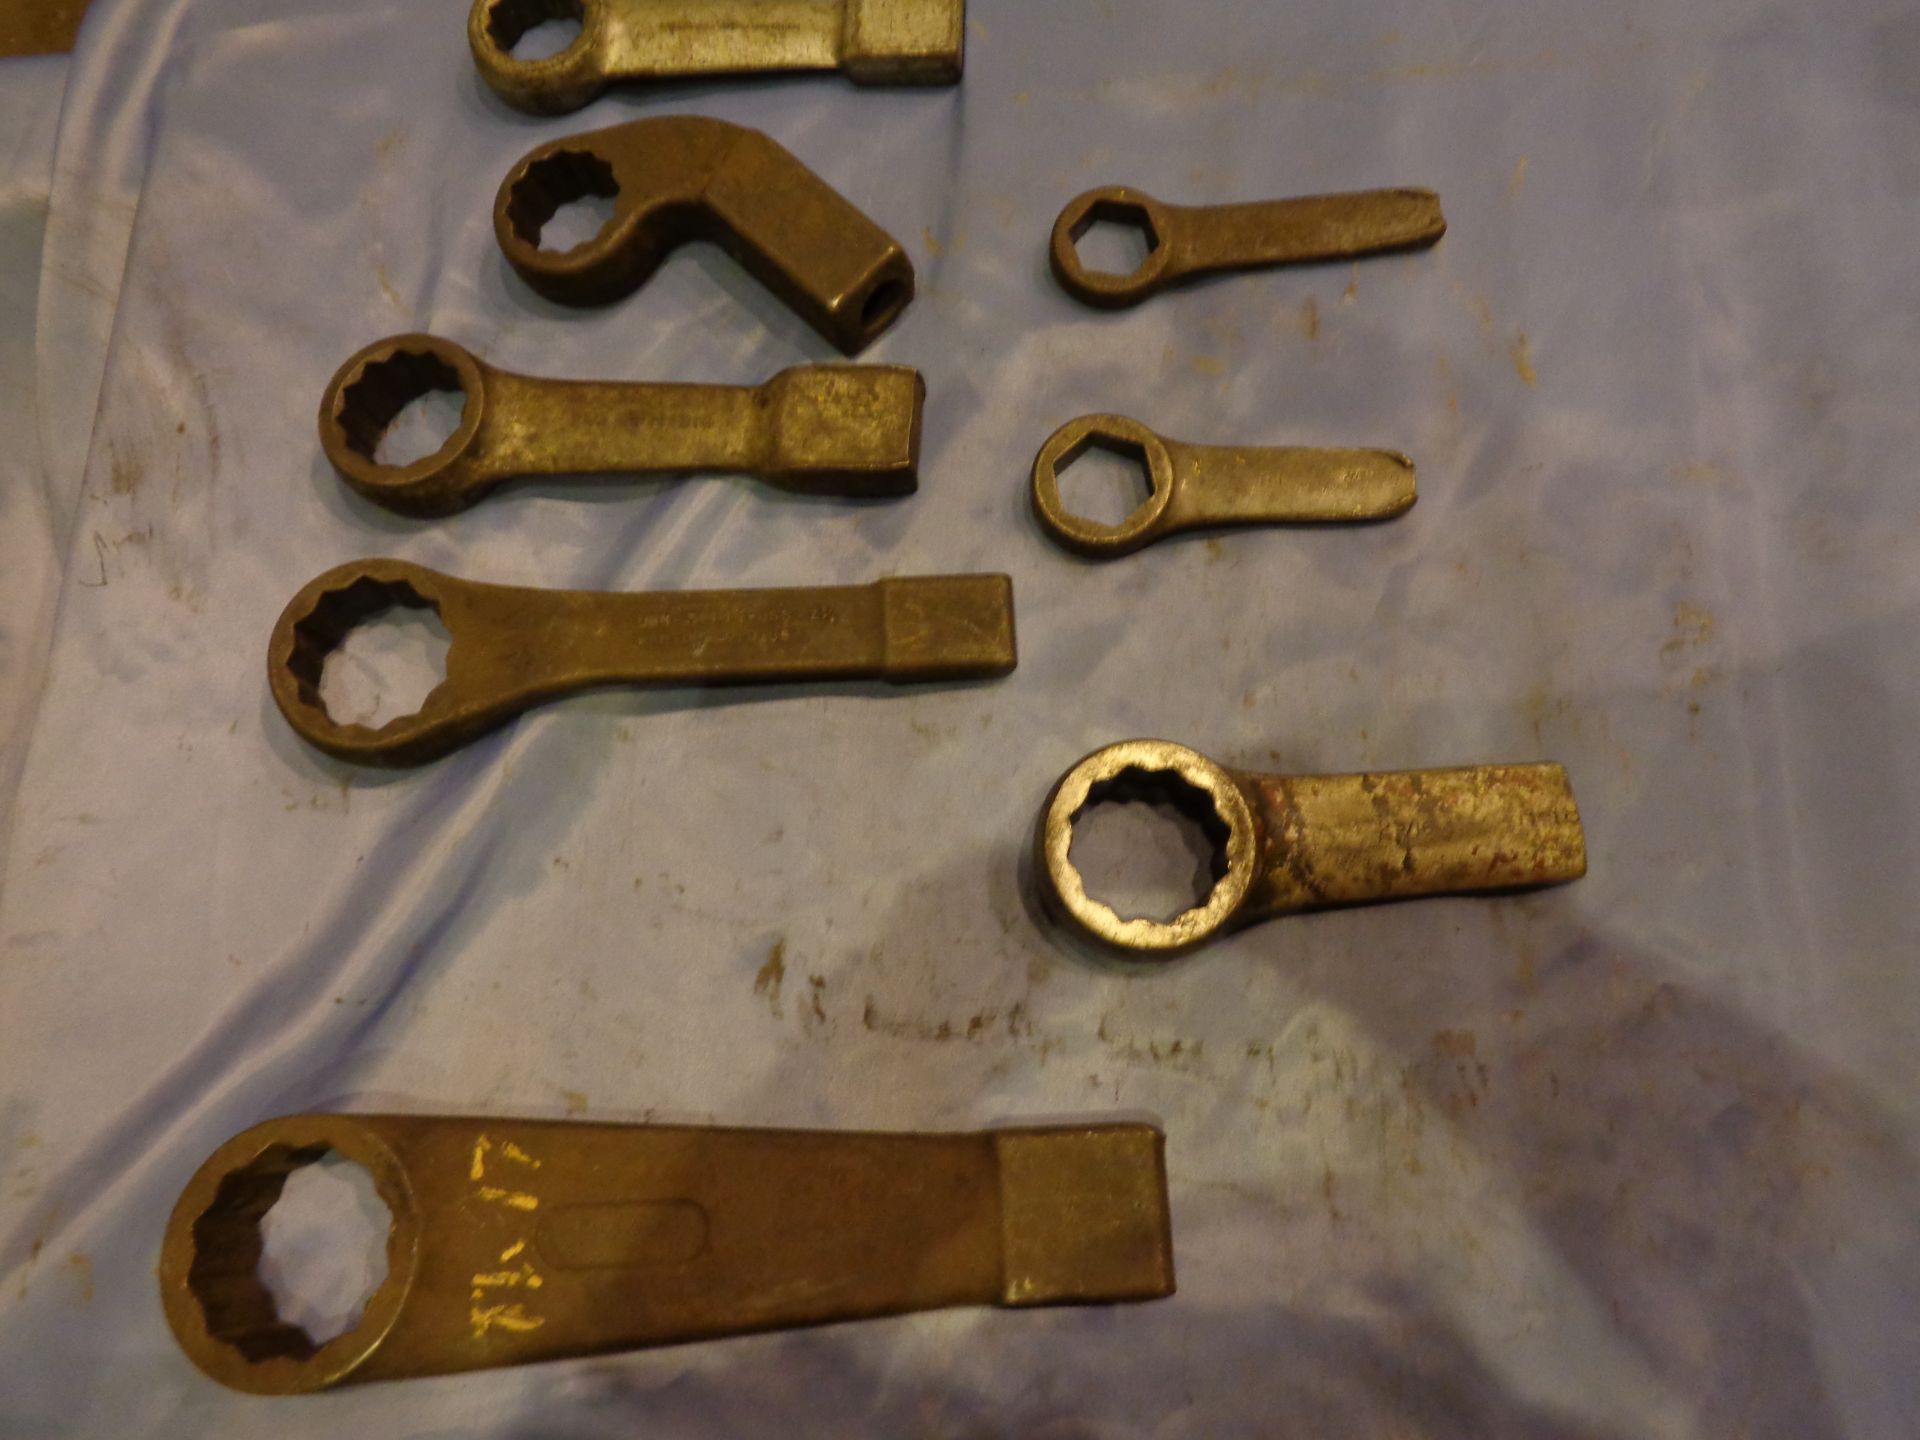 Lot of 8 Slug Wrenches - Image 5 of 5